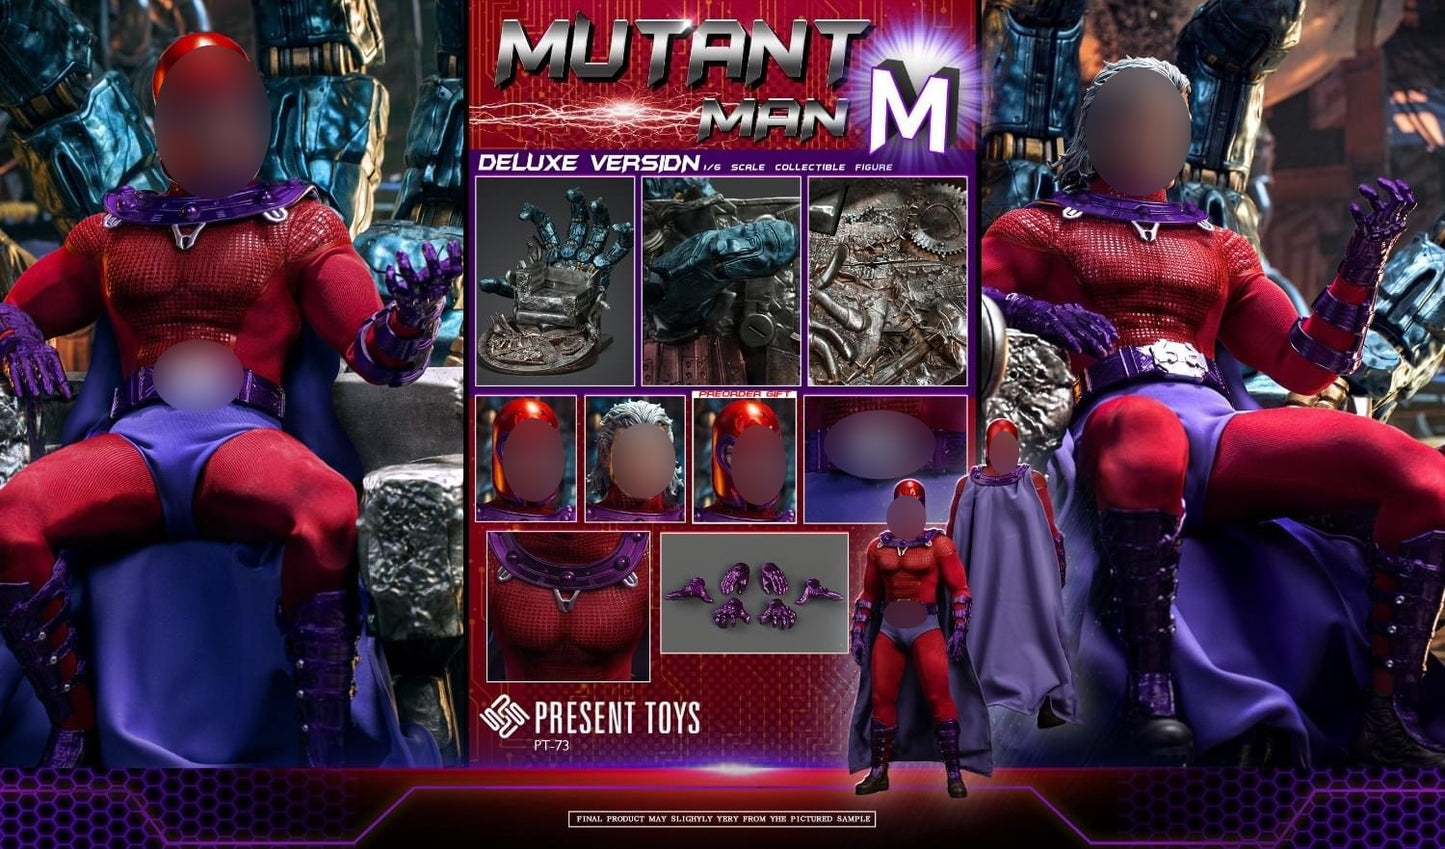 Preventa Figura Mutant Man M (Deluxe version) marca Present Toys SP73 escala 1/6